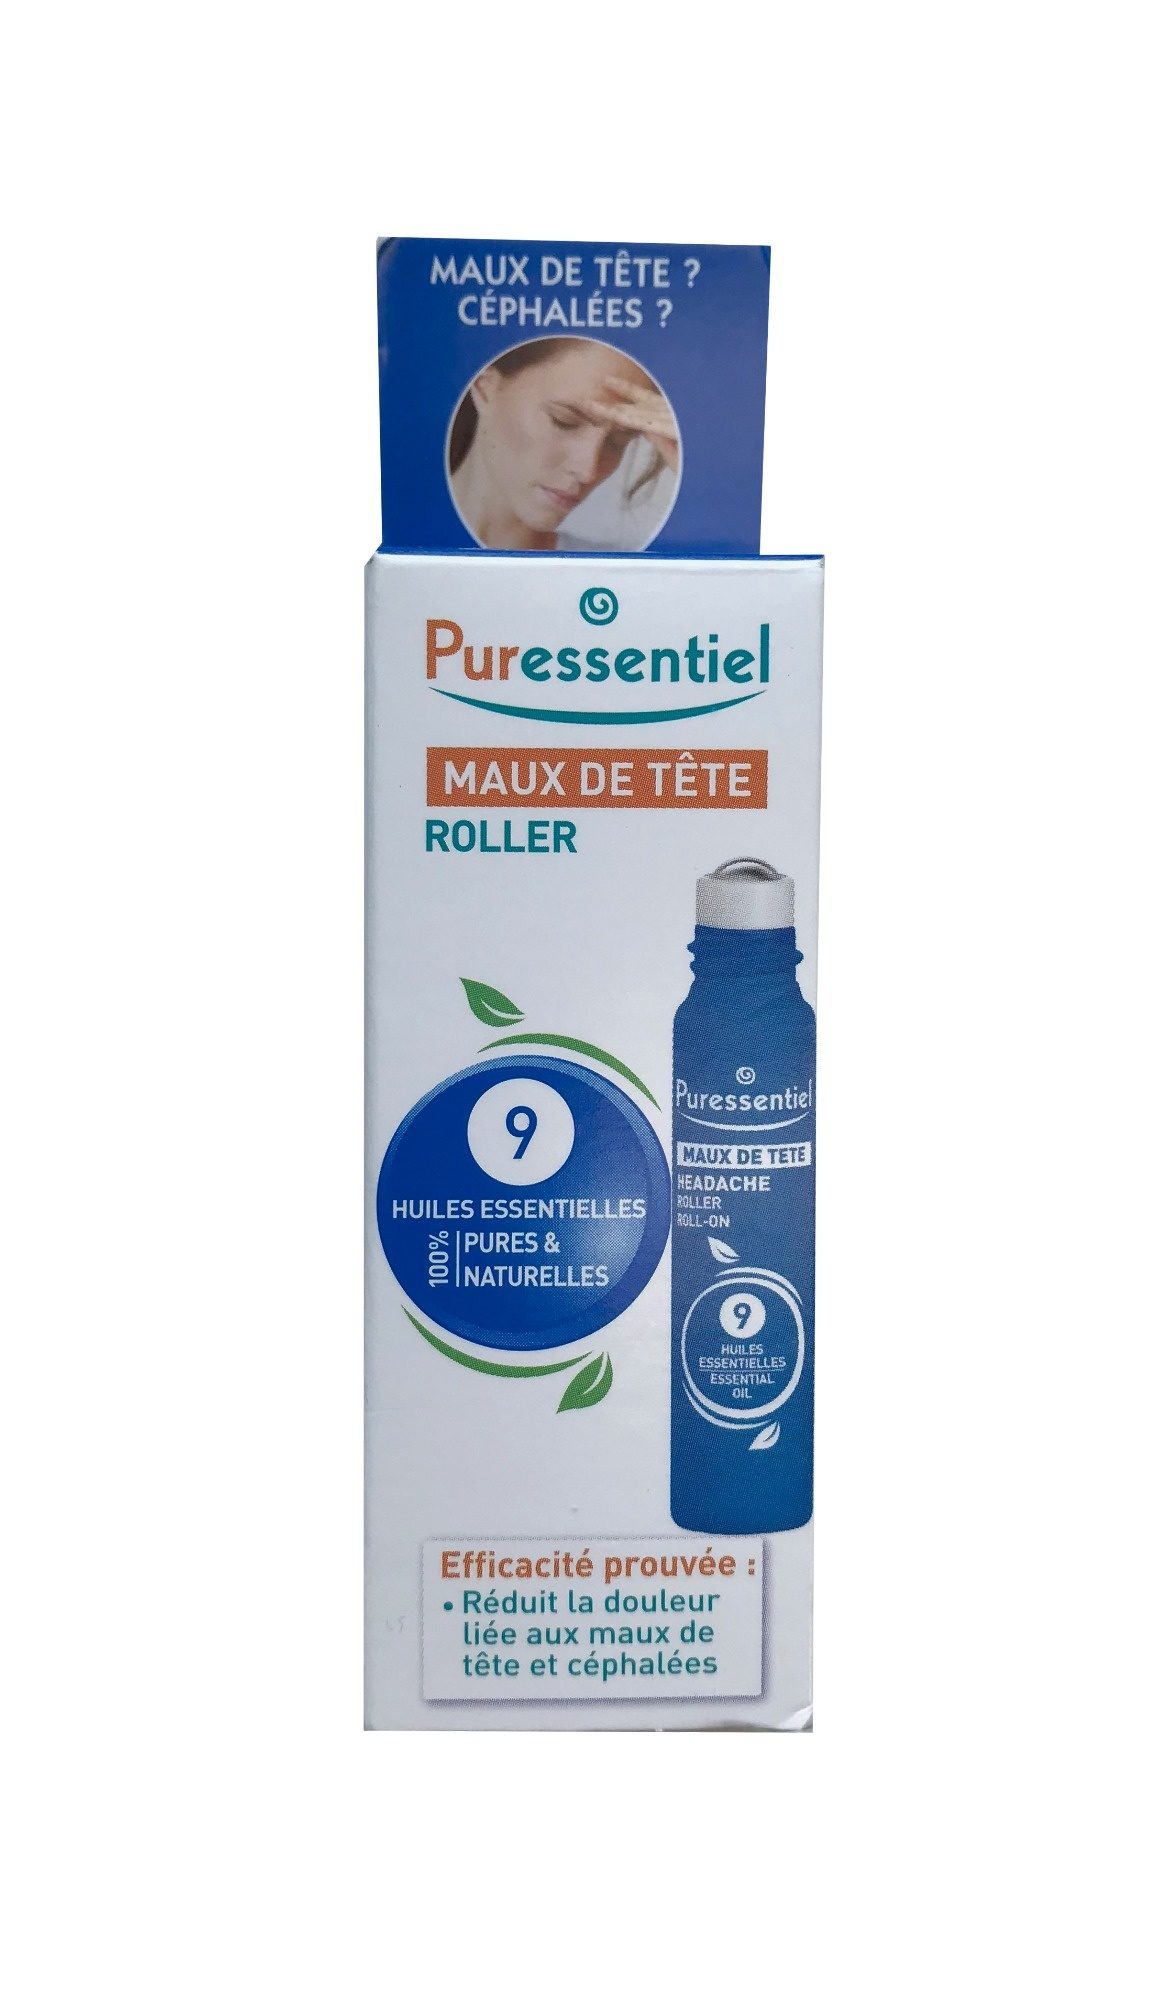 Puressentiel Maux de tête Roller 9 huiles essentielles - Tuote - fr